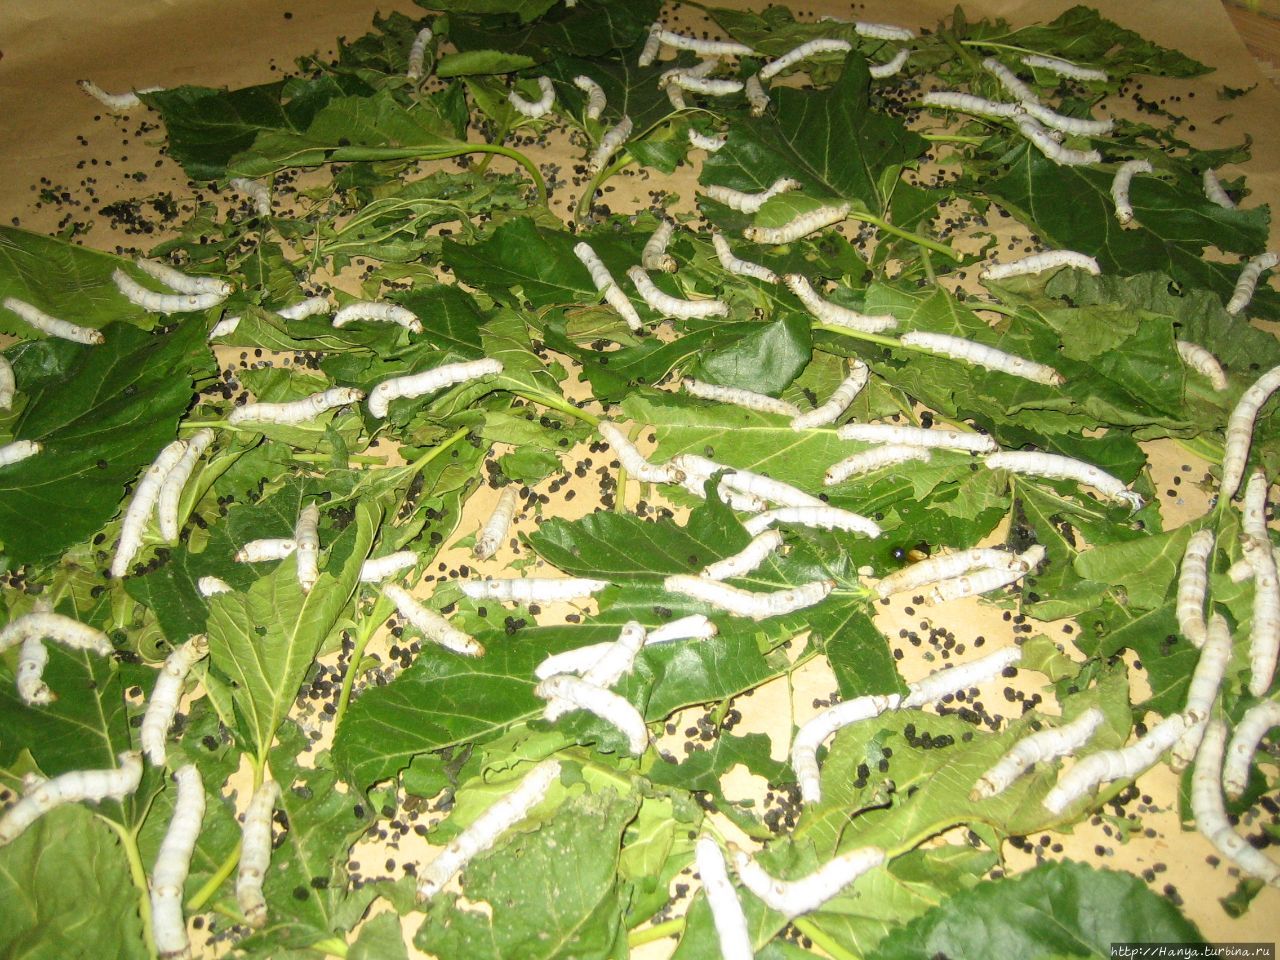 Сучжоу — родина шелкопрядения. Музей шелка.Живые гусеницы “вкушают” листья тутового дерева Сучжоу, Китай